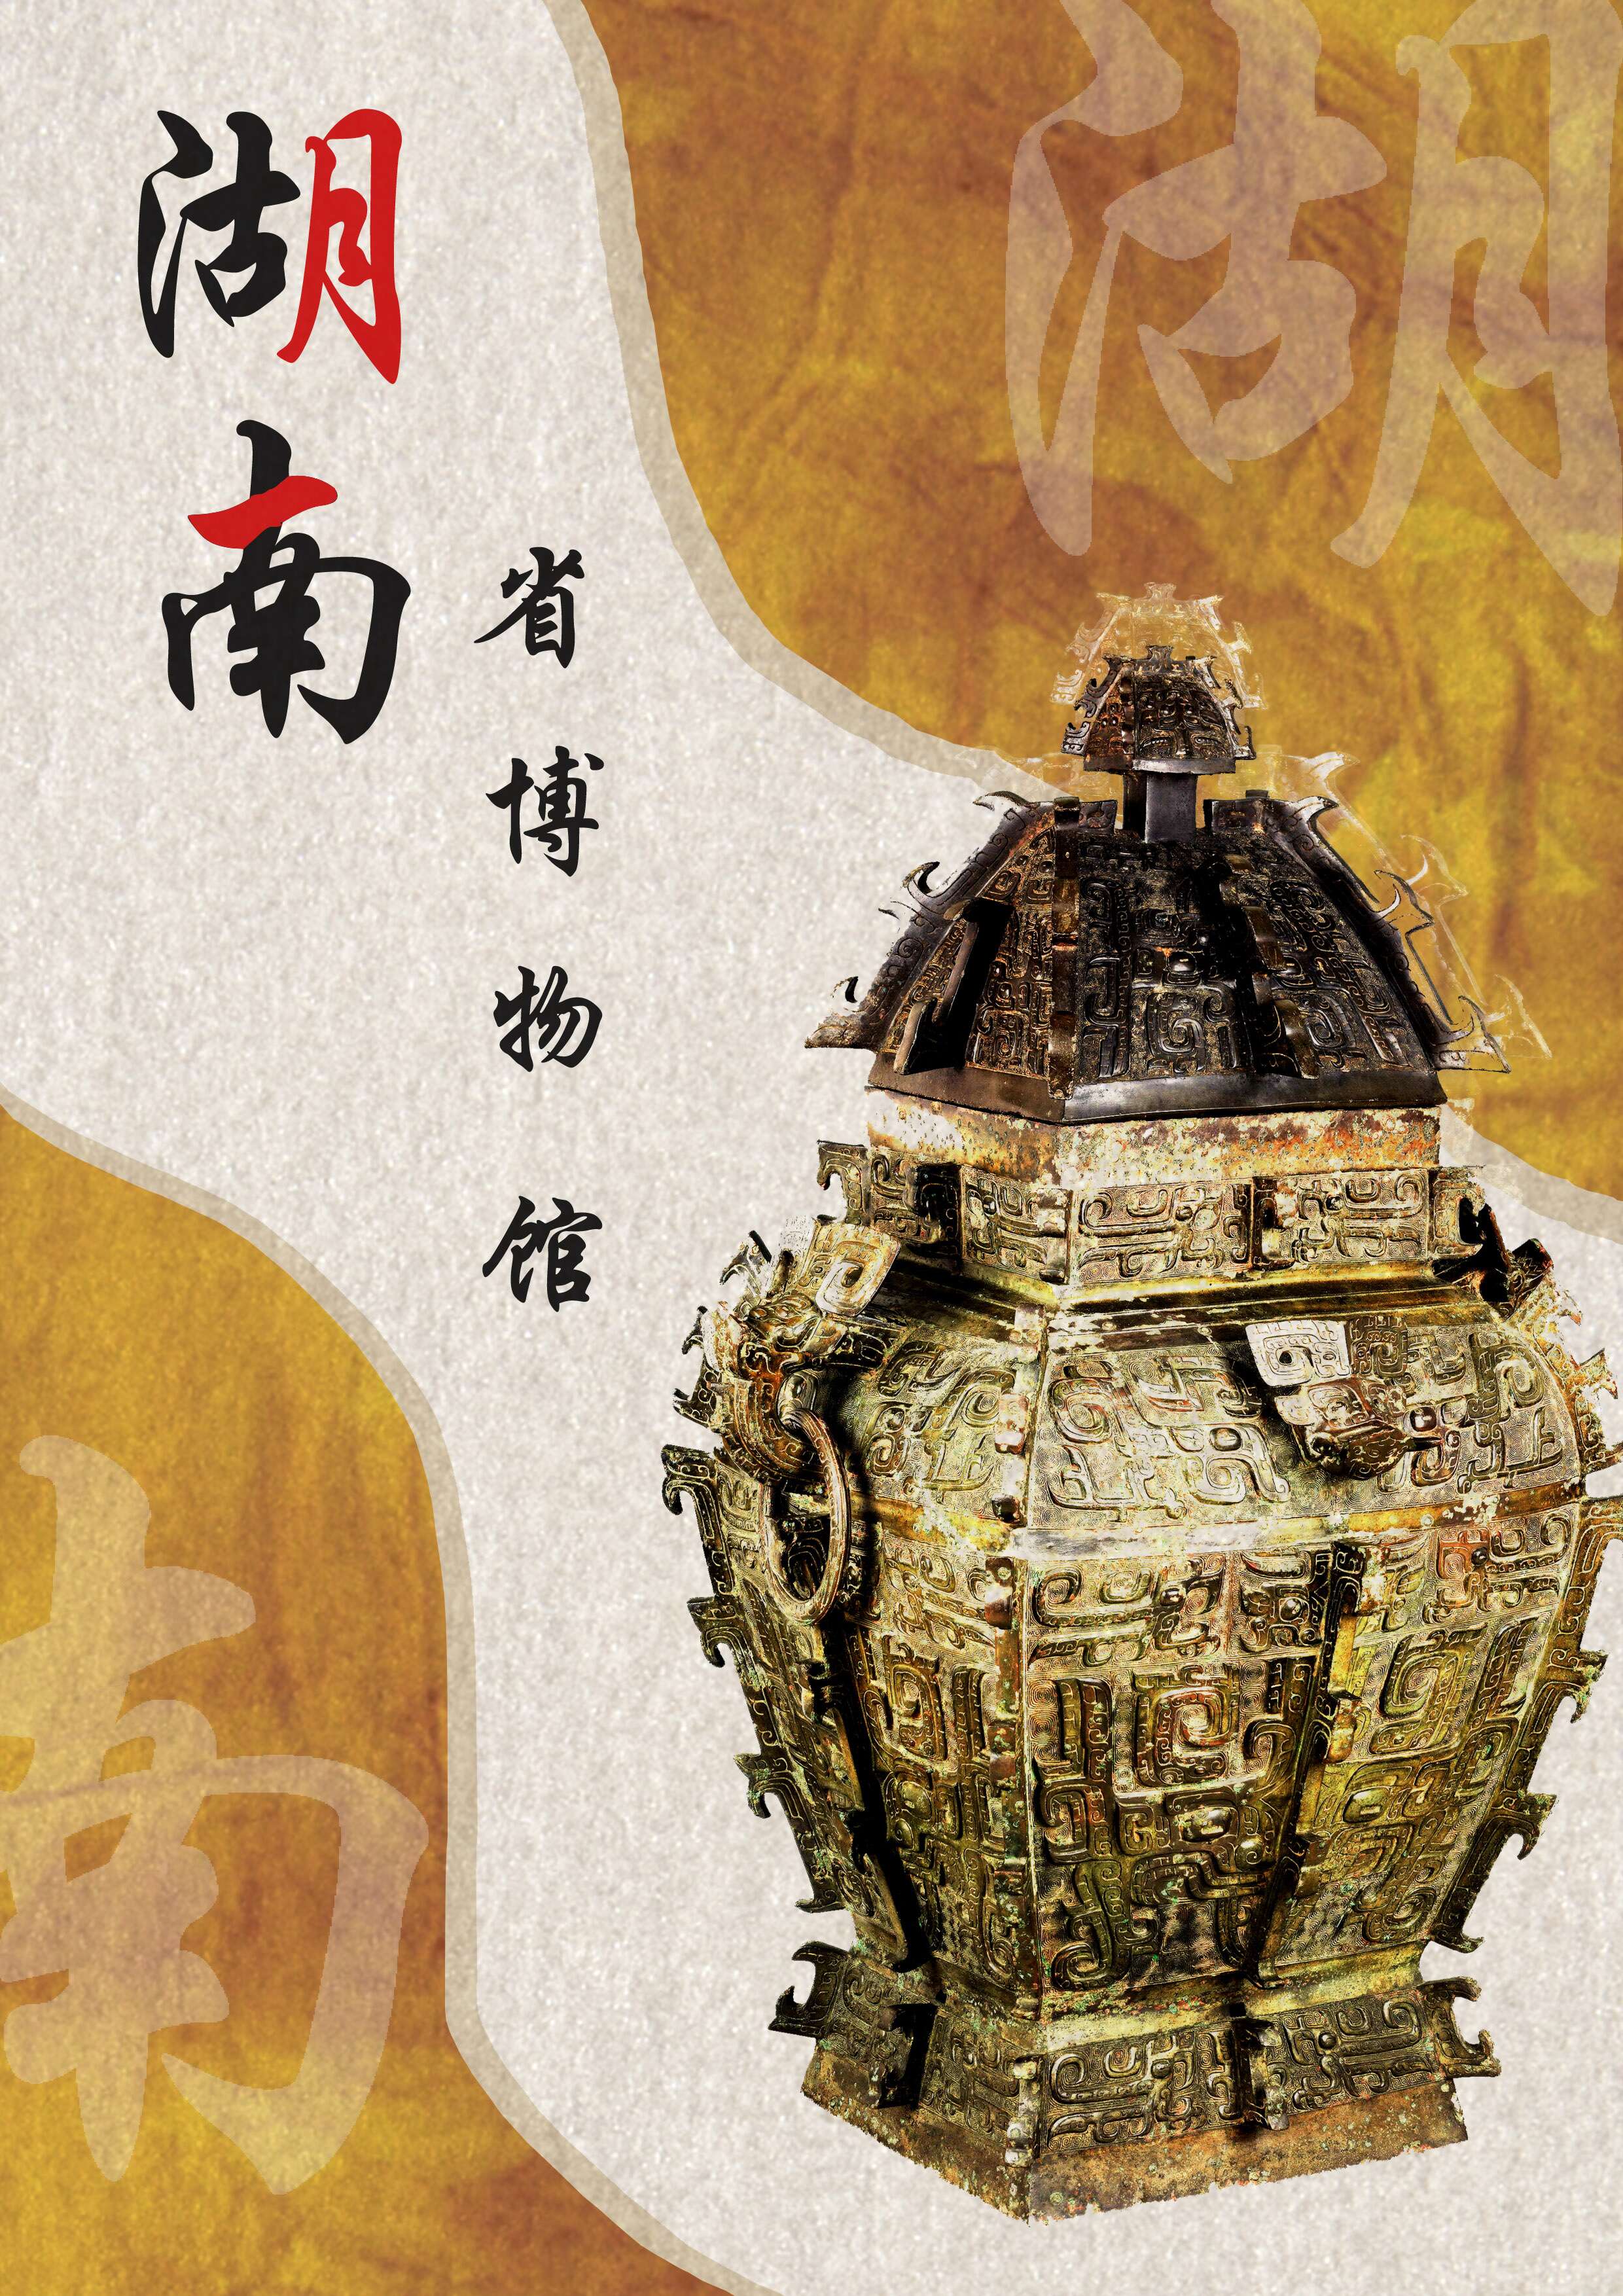 湖南省博物馆相关文物画册,折页和海报